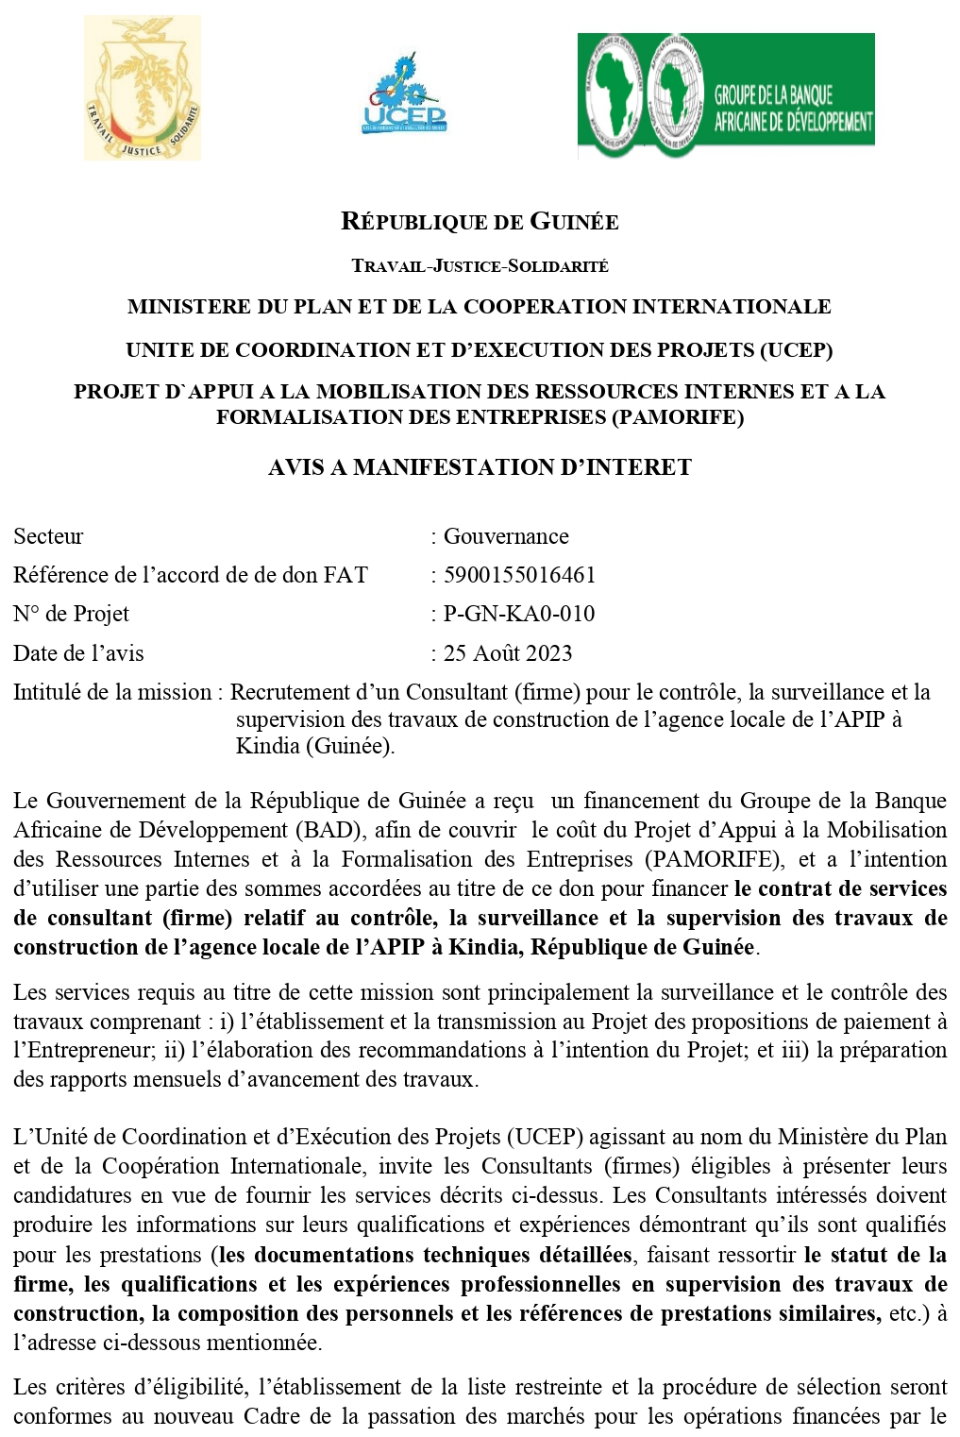 Avis à manifestation d’intérêt pour le Recrutement d’un Consultant (firme) pour le contrôle, la surveillance et la supervision des travaux de construction de l’agence locale de l’APIP à Kindia (Guinée) | page 1